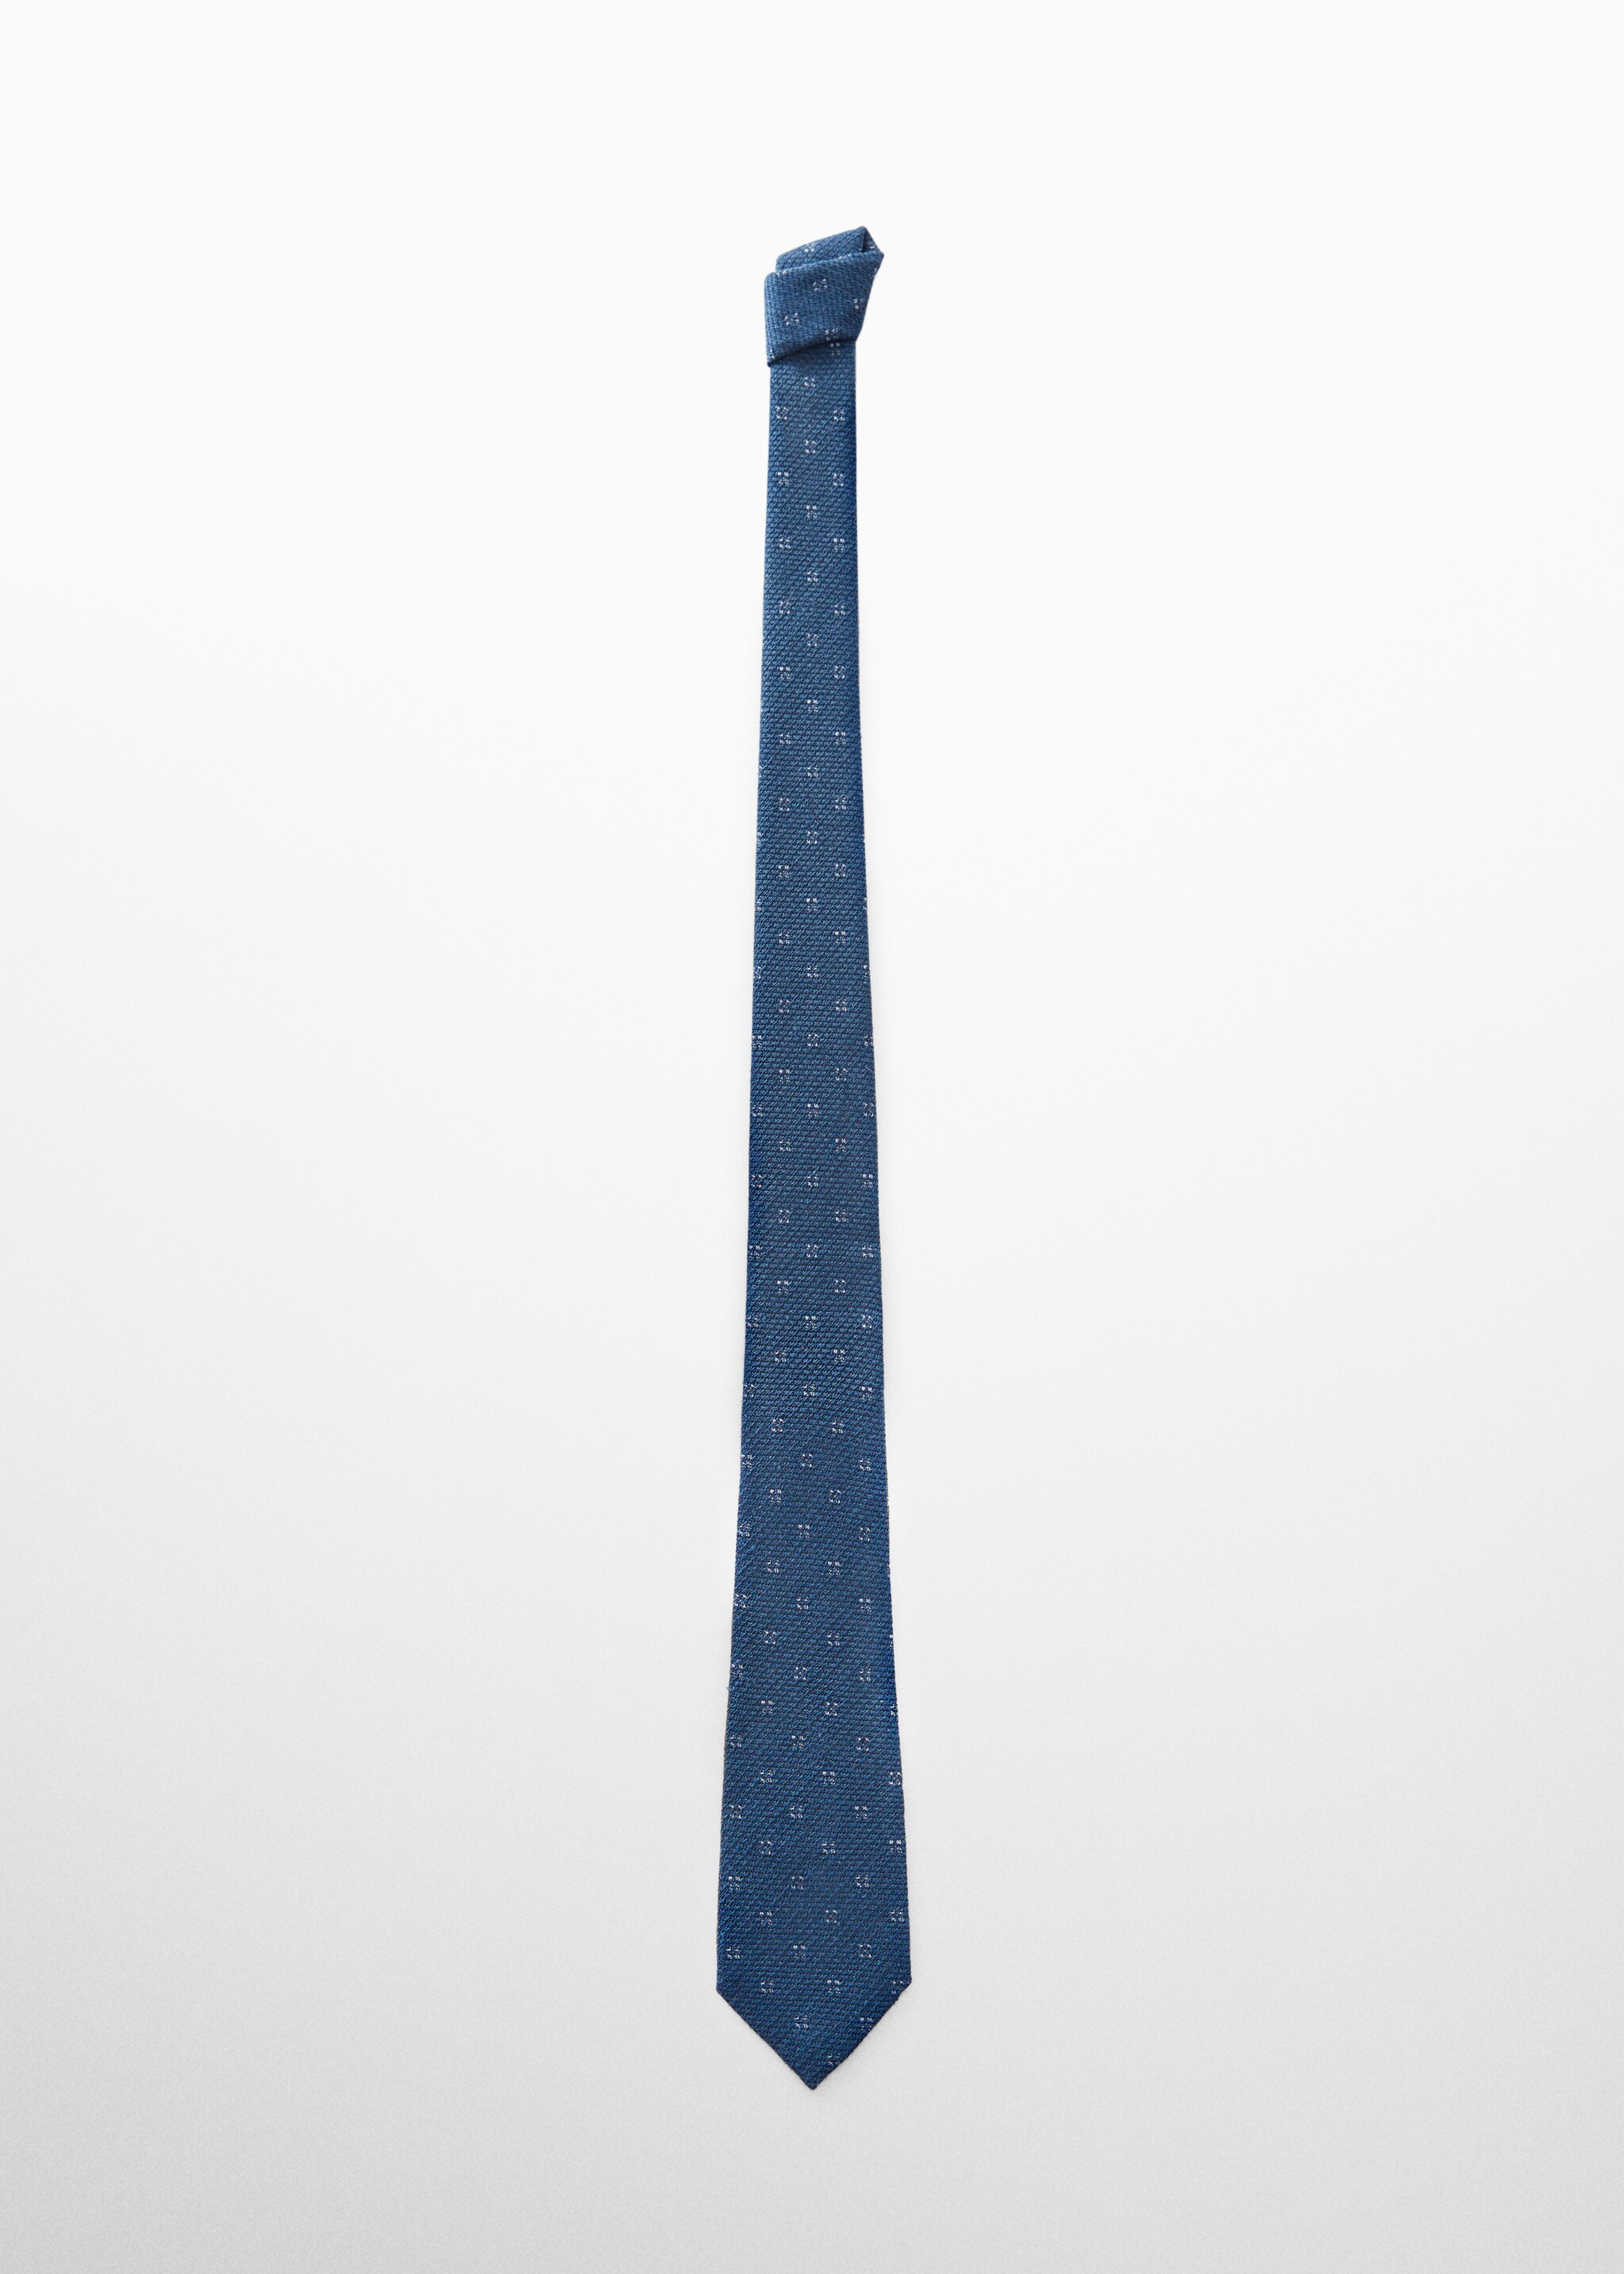 Krawat z 100% jedwabiu morwowego z teksturą - Artykuł bez modela/modelki